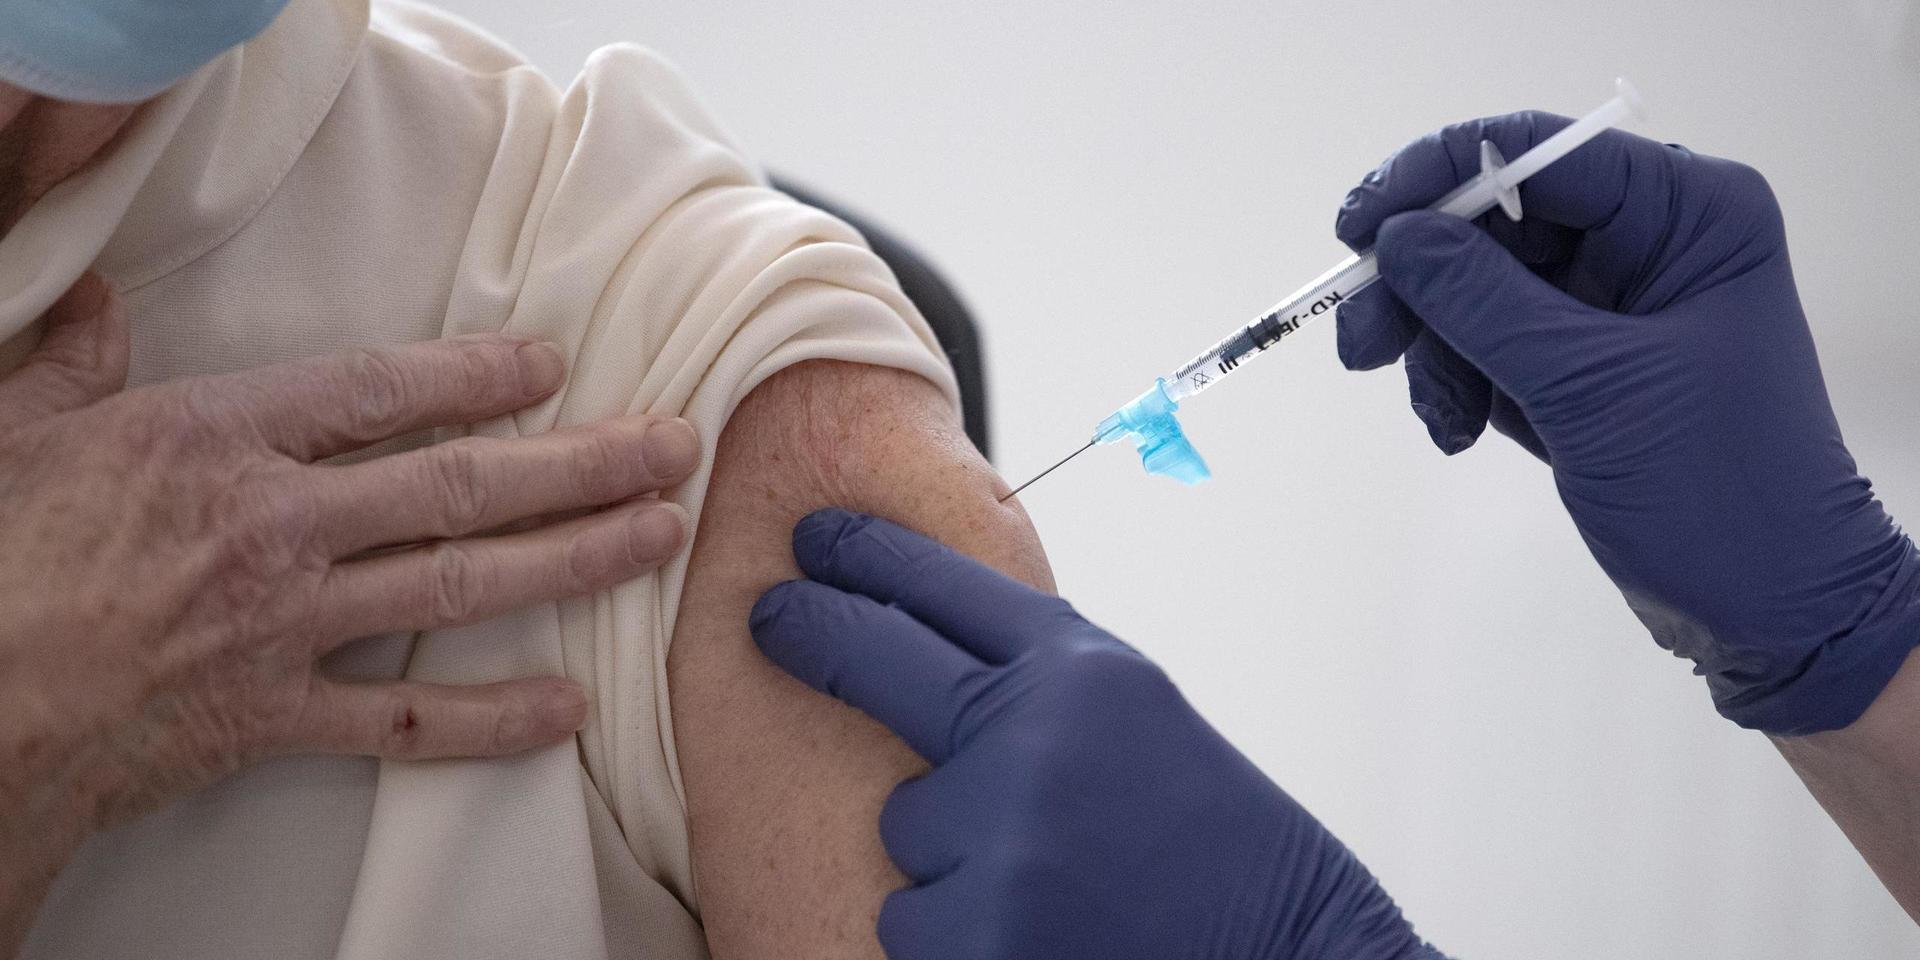 Hundratusentals människor i Sverige har vaccinerats mot covid-19. En liten andel av dem har testat positivt efter vaccineringen.